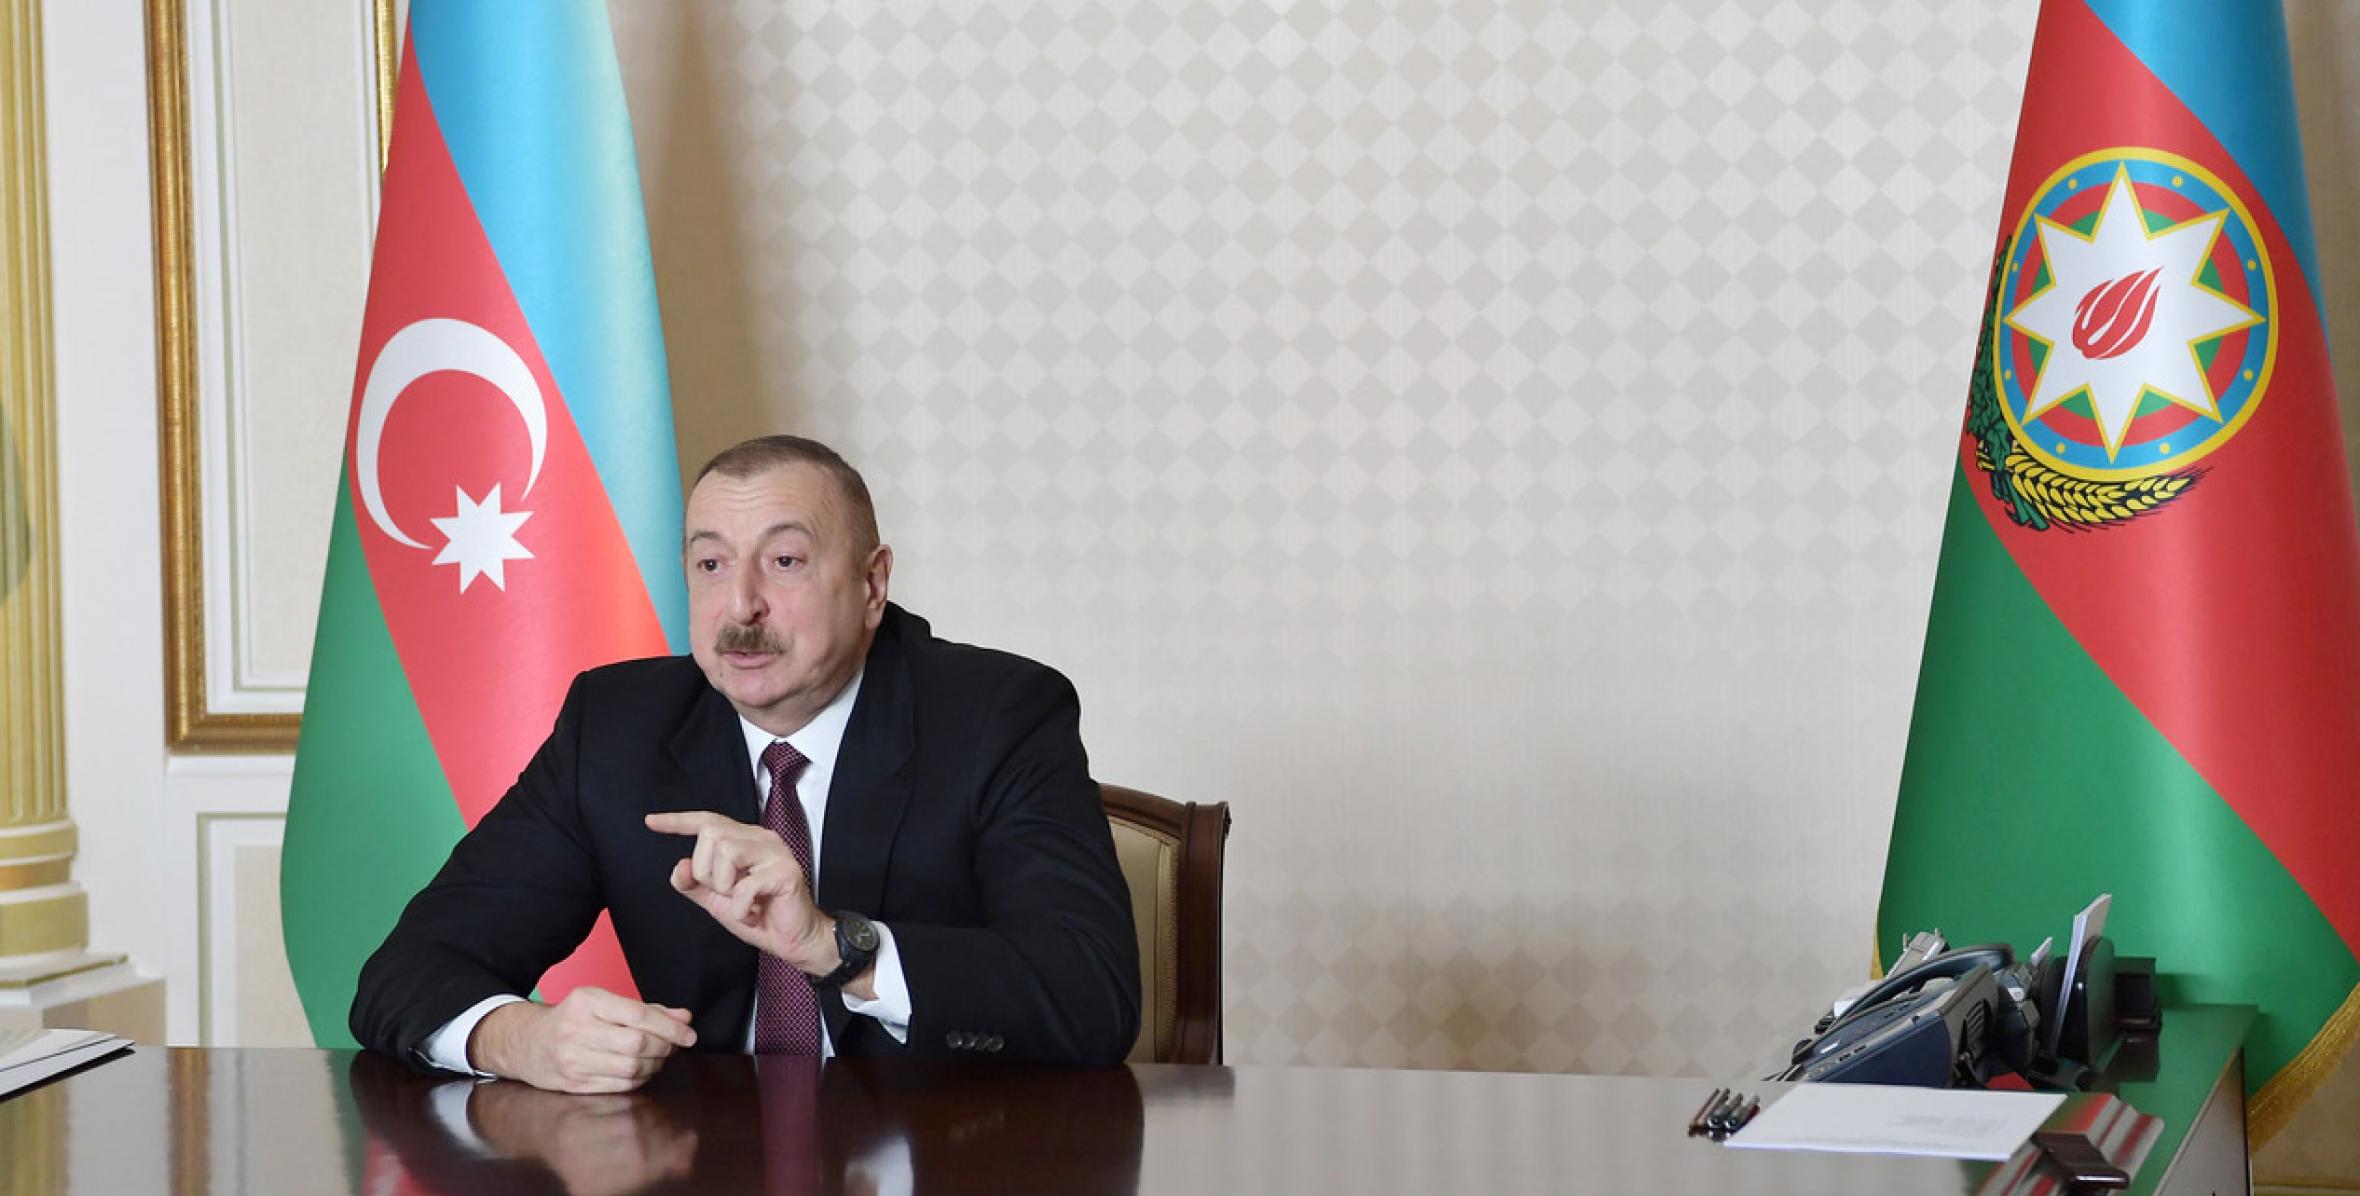 Заключительная речь Ильхама Алиева на совещание в формате видеоконференции, посвященное социально-экономическим итогам первого квартала года